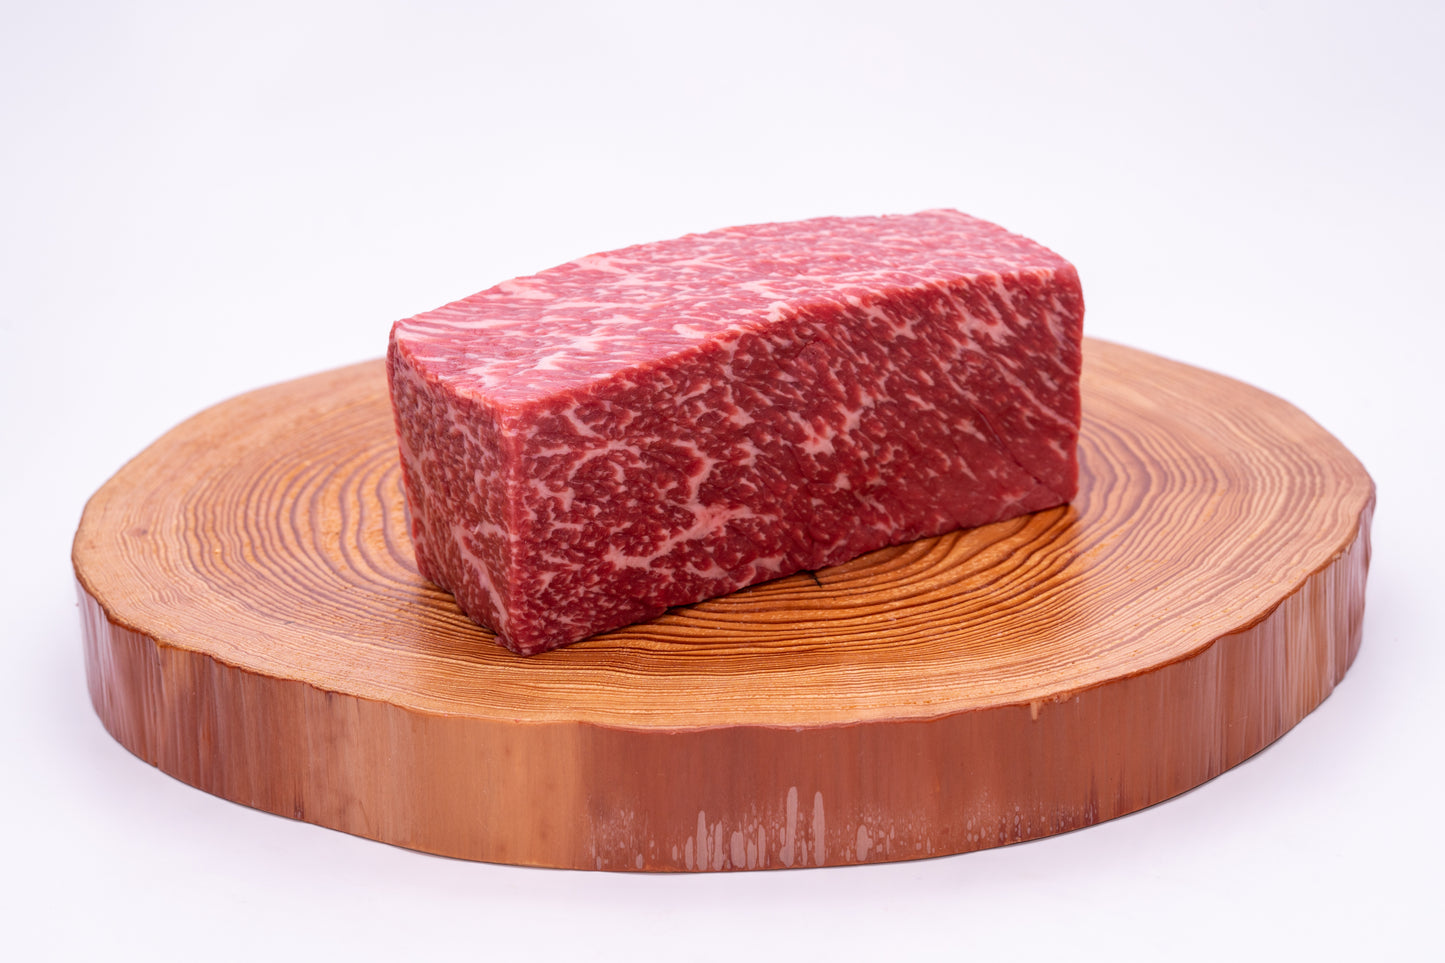 他の牛肉よりも栄養価が高く、脂もすっきりとし健康ビーフと呼ばれるモモをブロックでご用意。ぜひ熊本和牛あか牛（赤牛）精肉販売所オンラインショップの通販でお買い求めください。